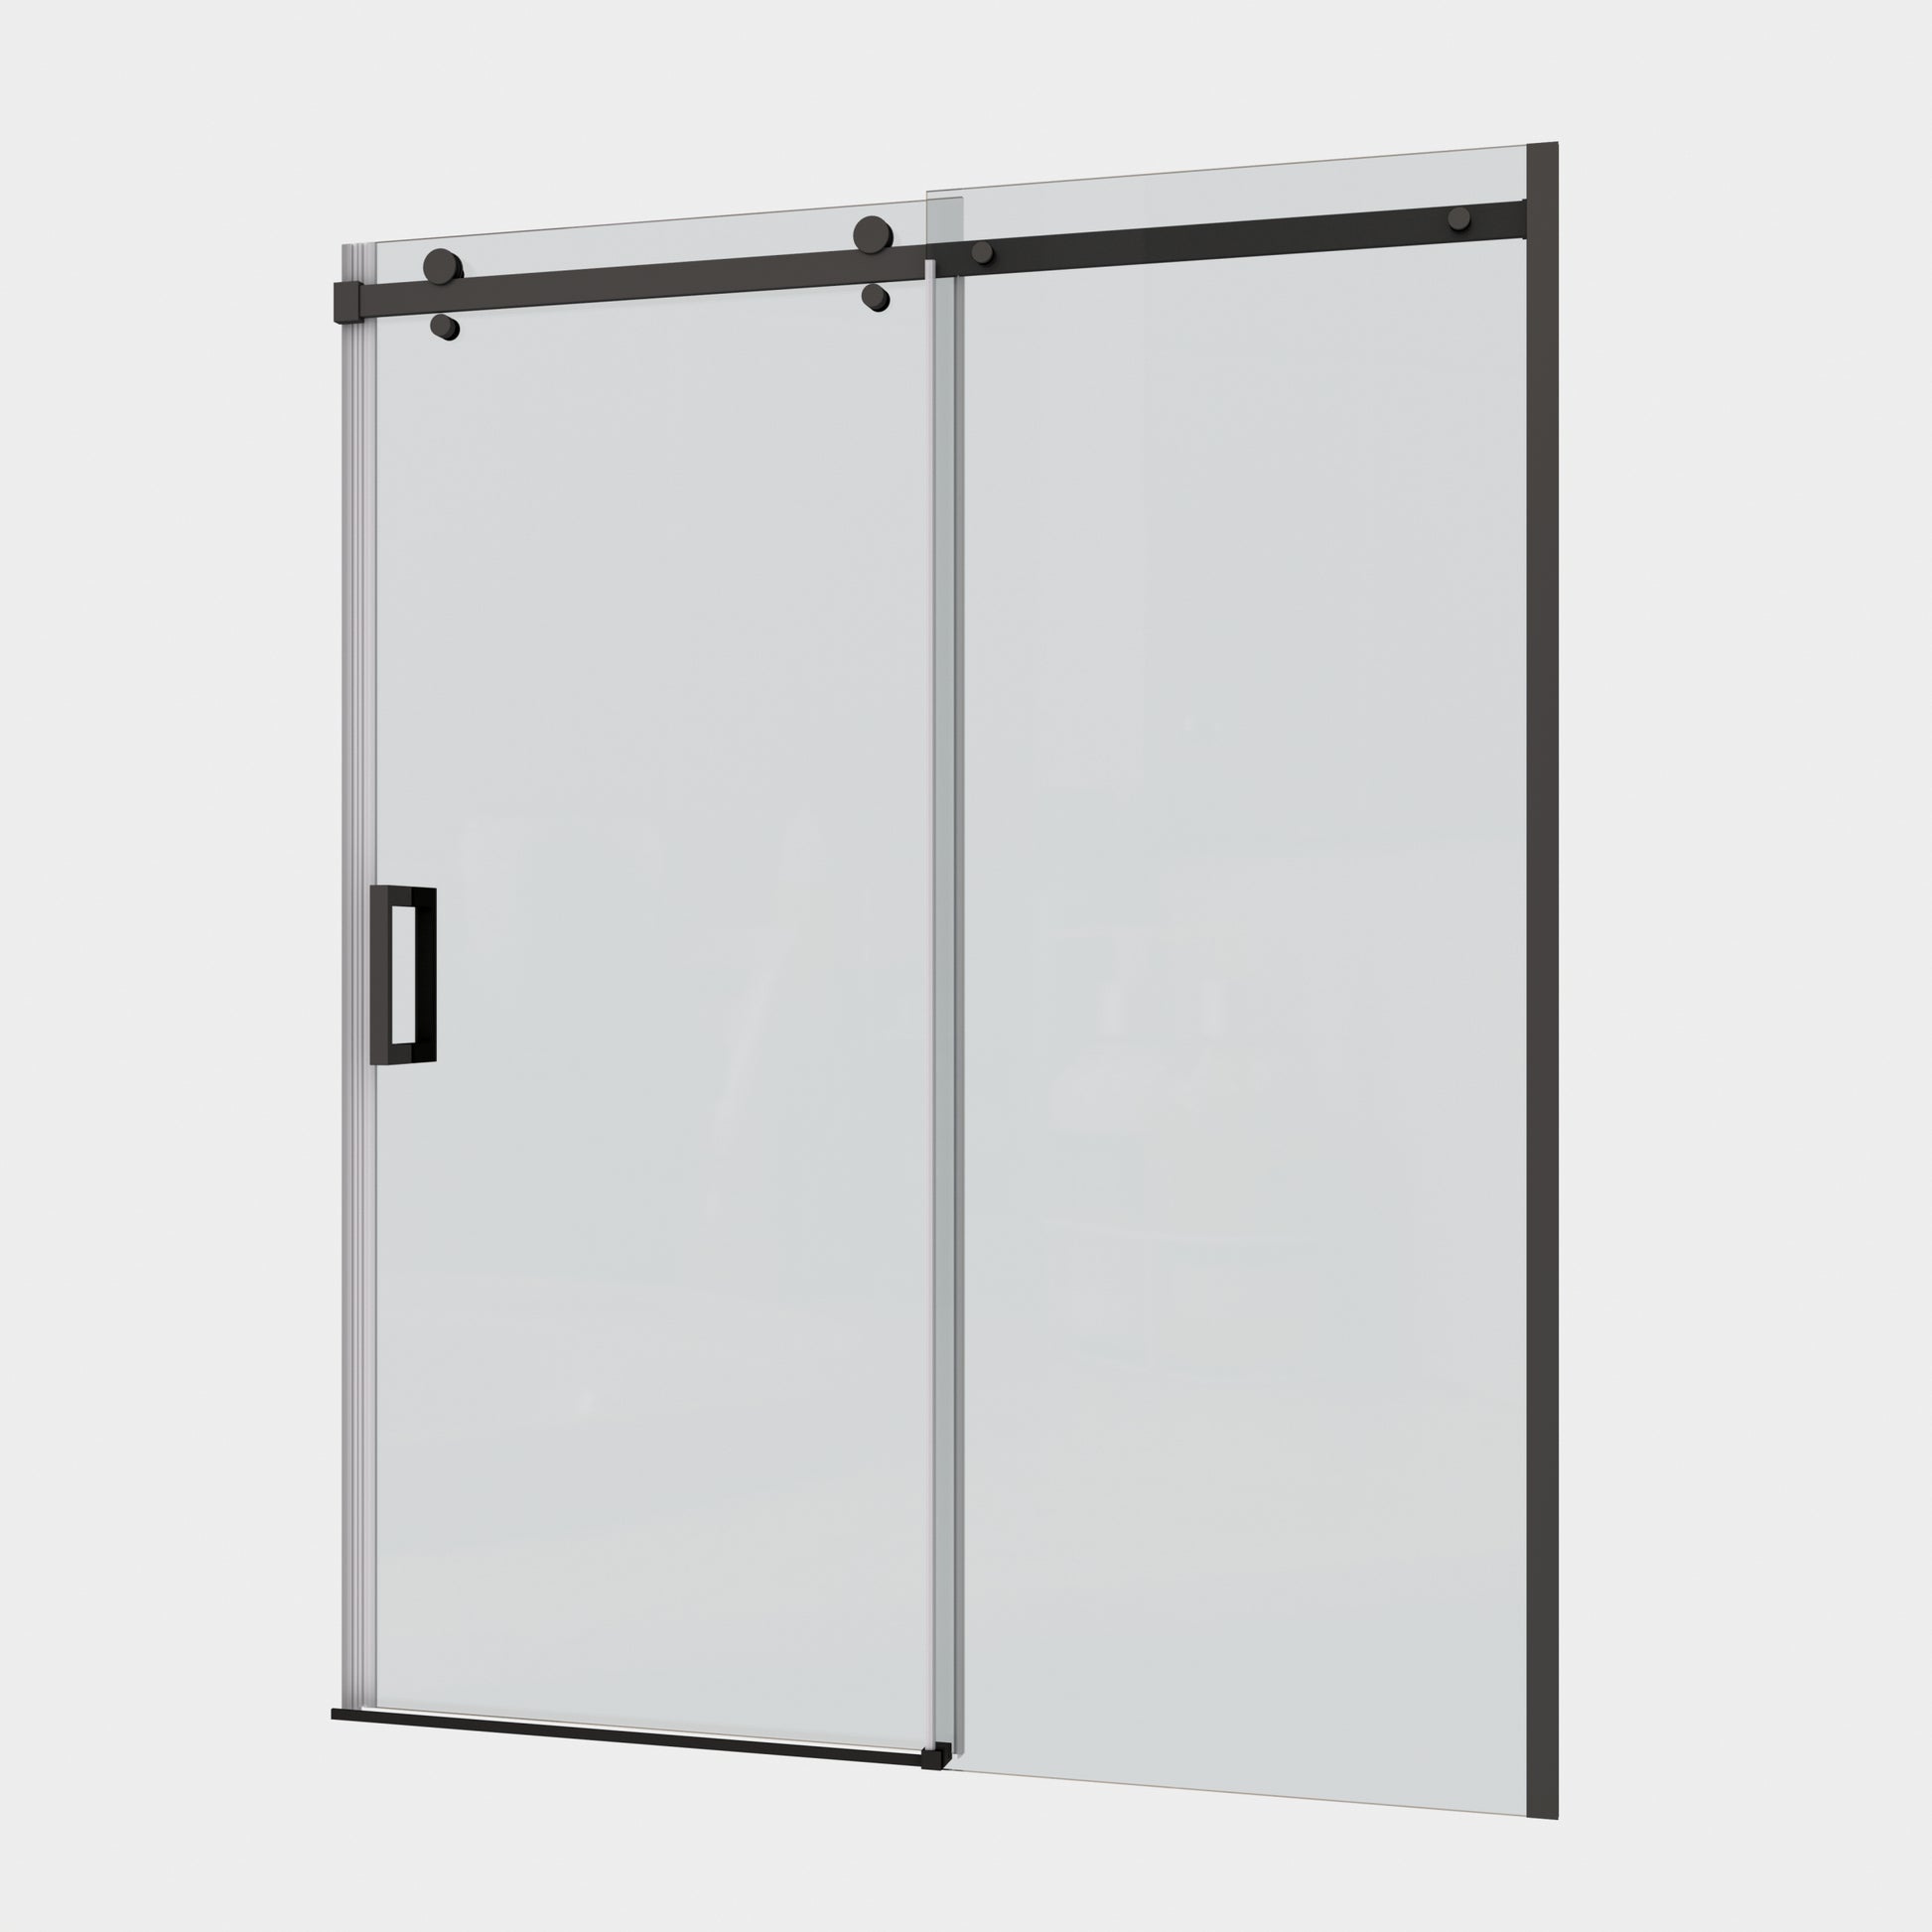 Glass Shower Door, Sliding Door, With 5 16"